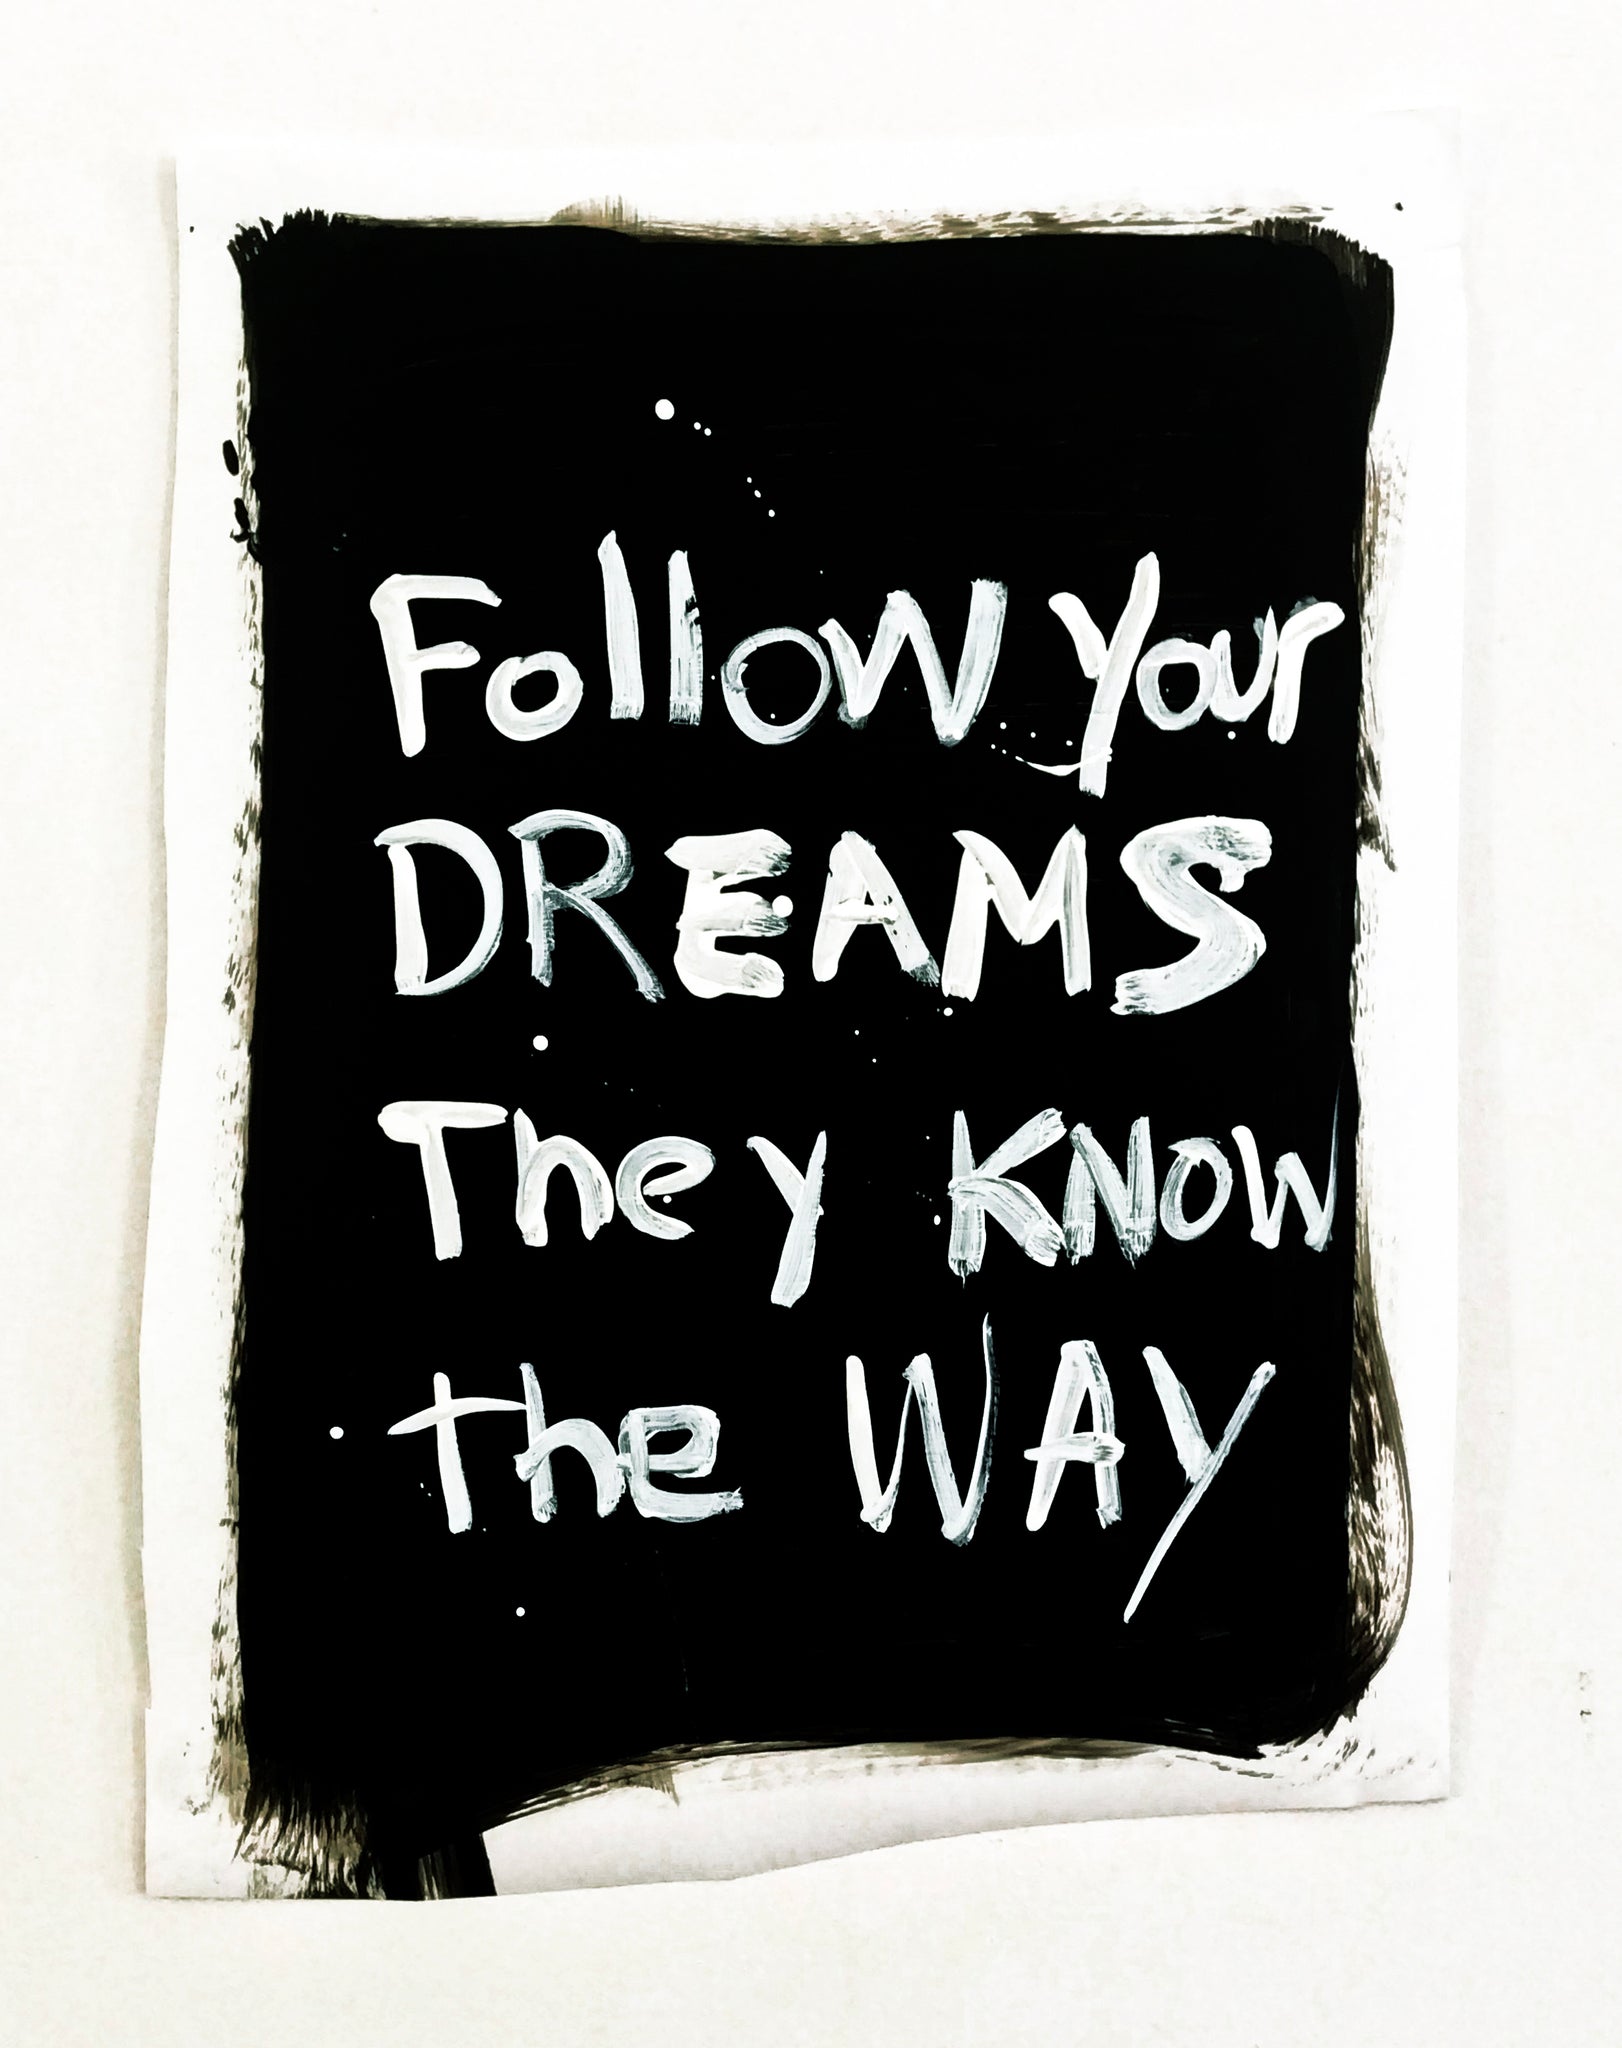 Alison Woods, "Follow Dreams"